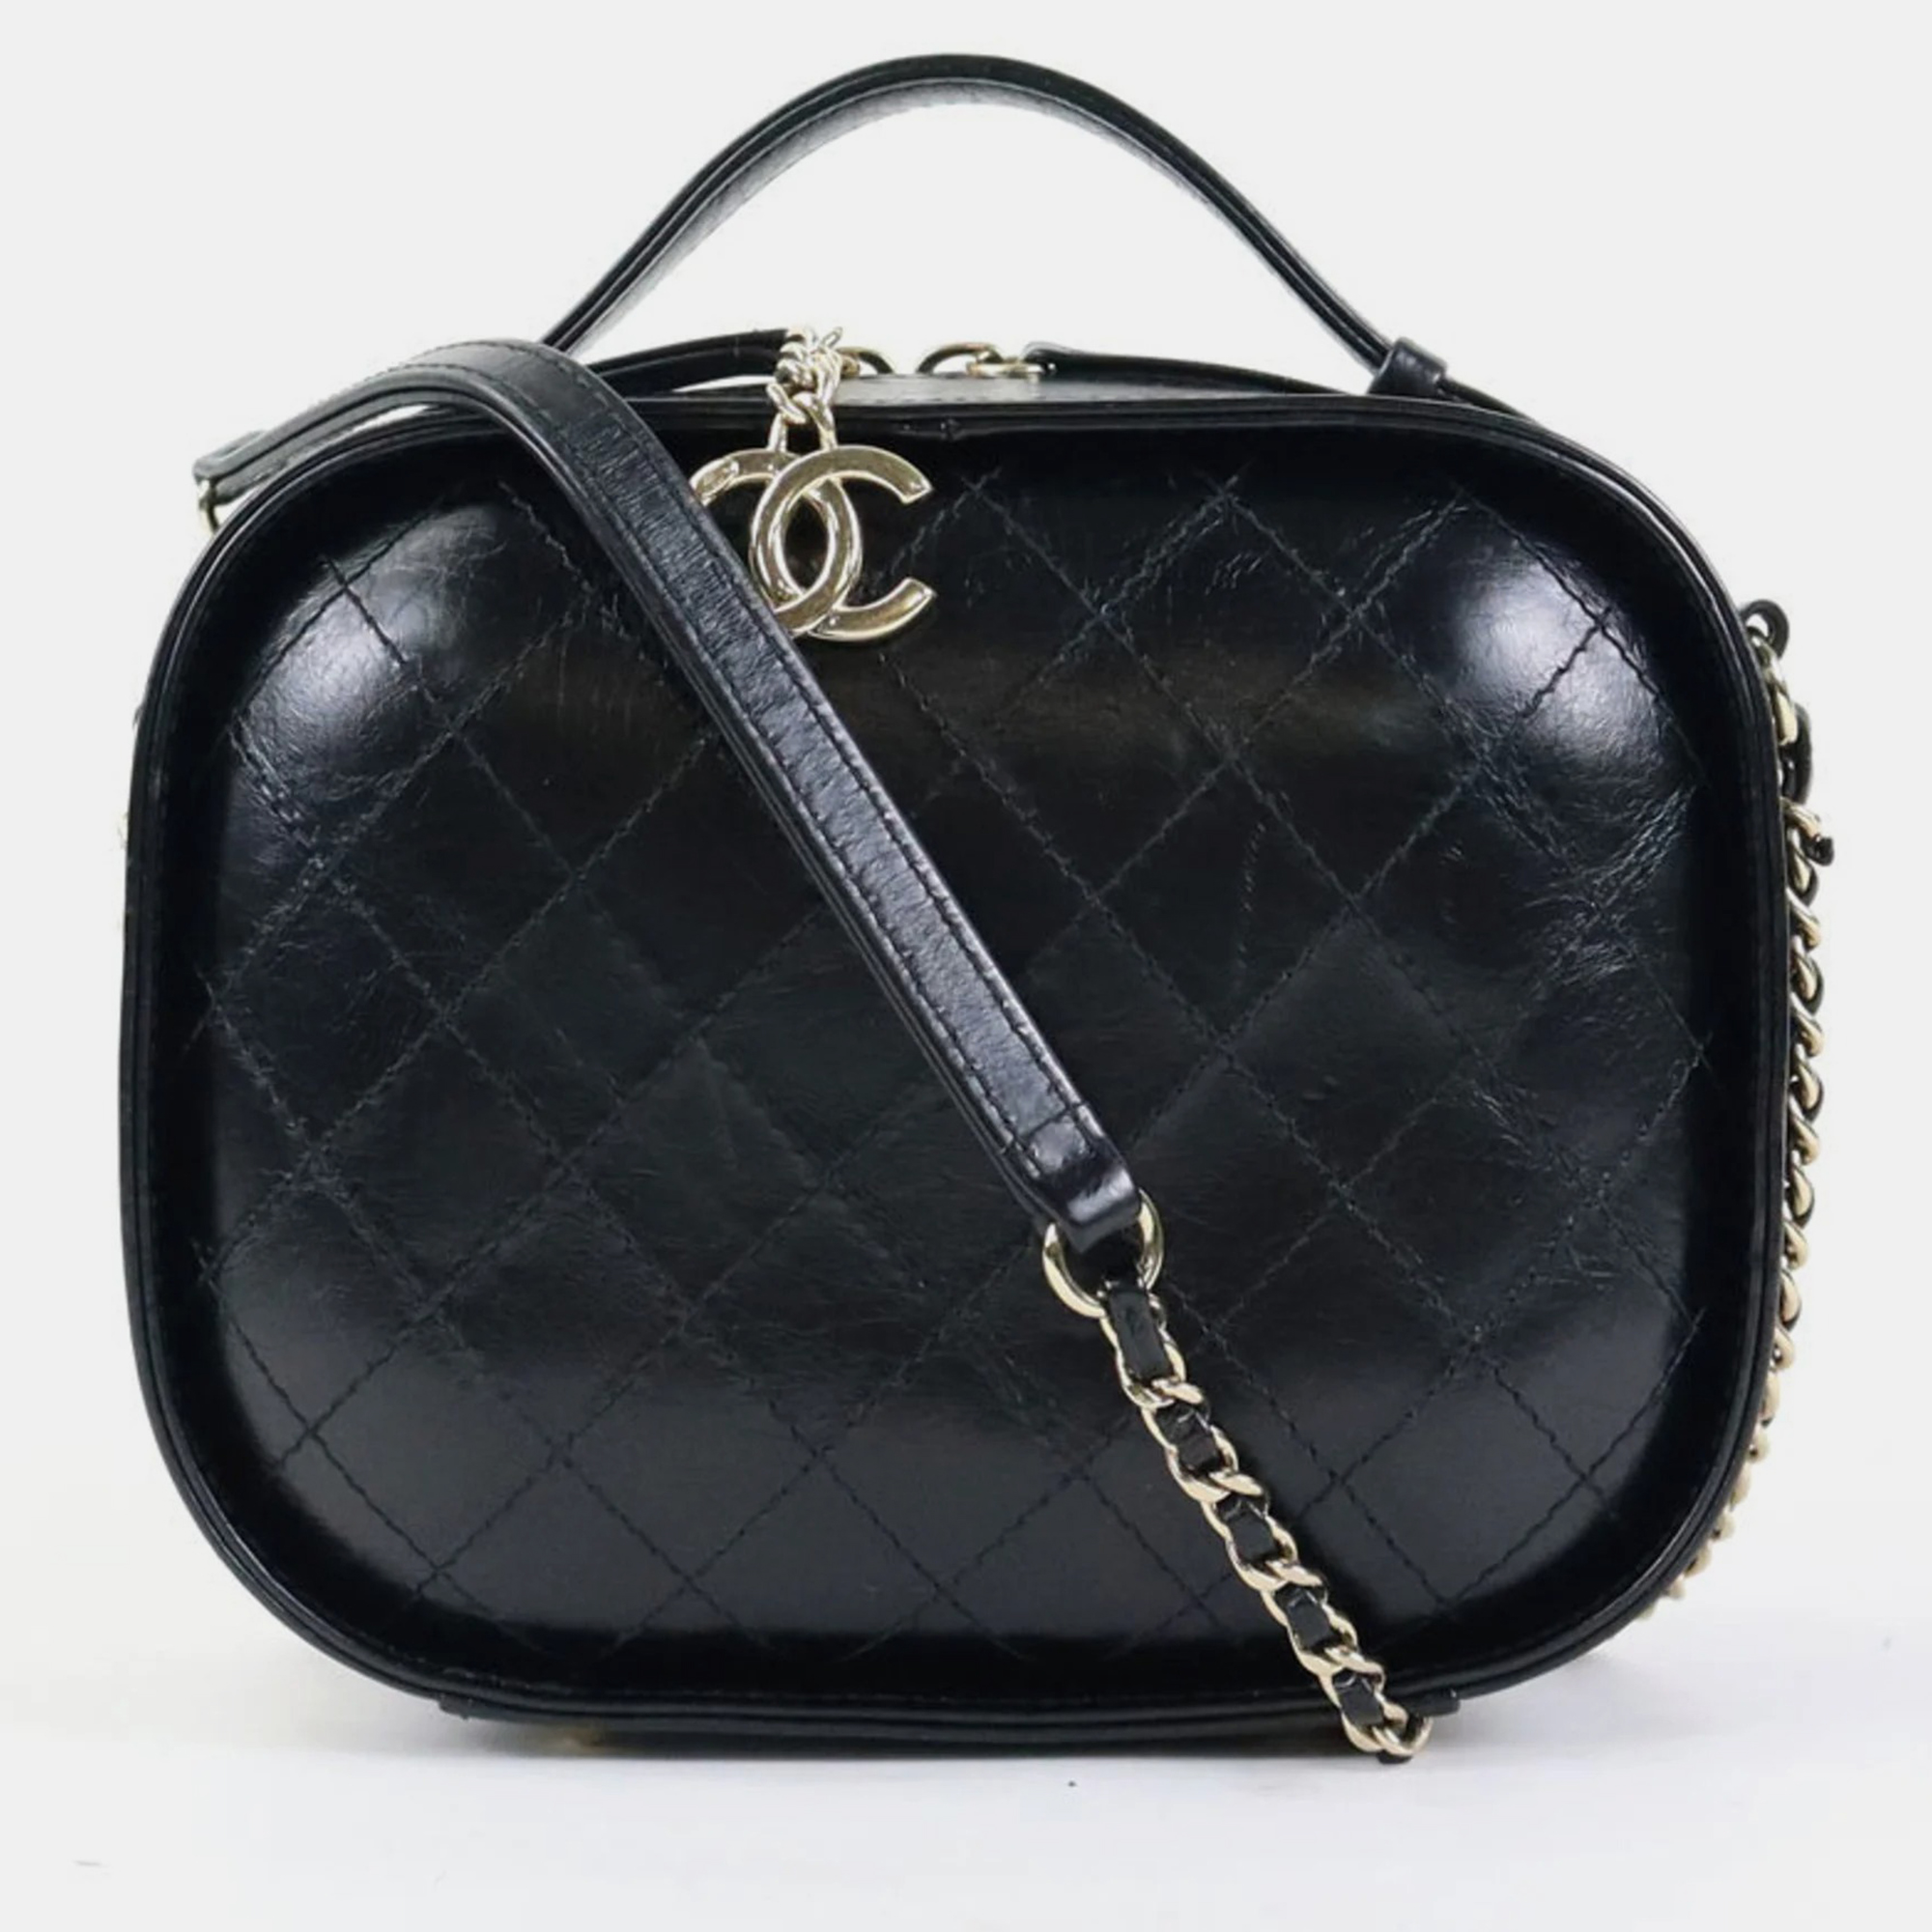 Chanel black leather vanity case bag